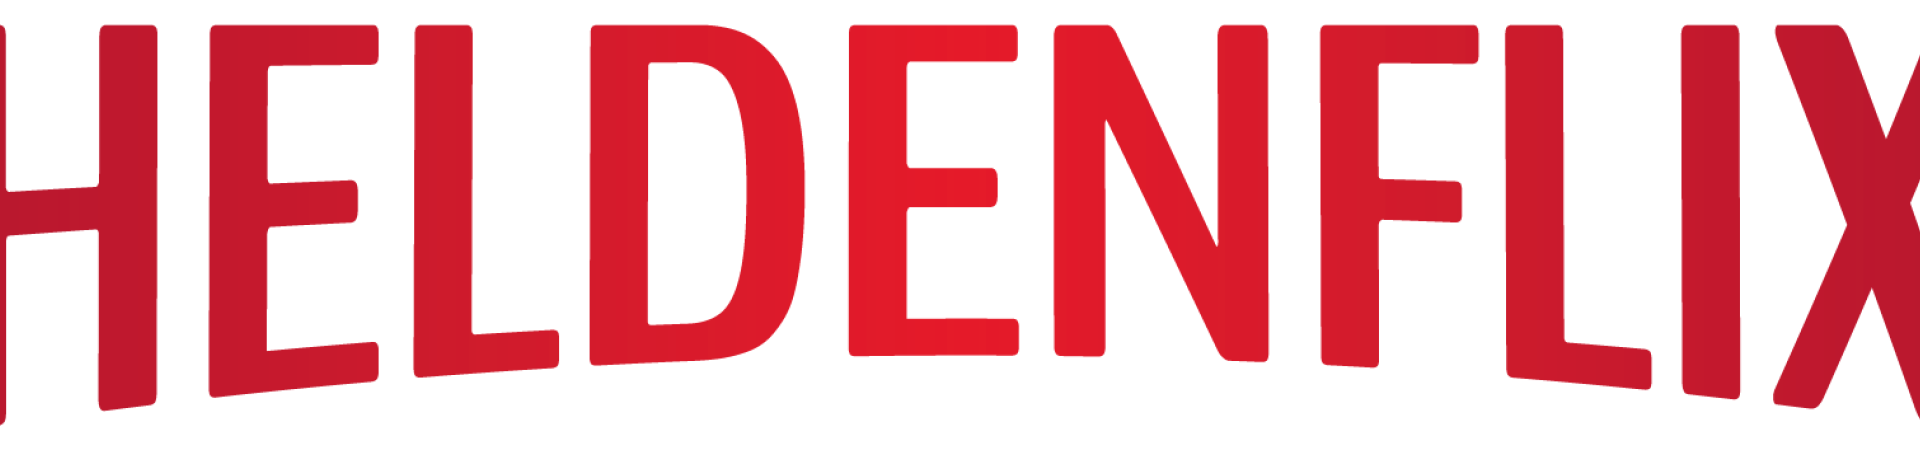 Heldenflix Logo